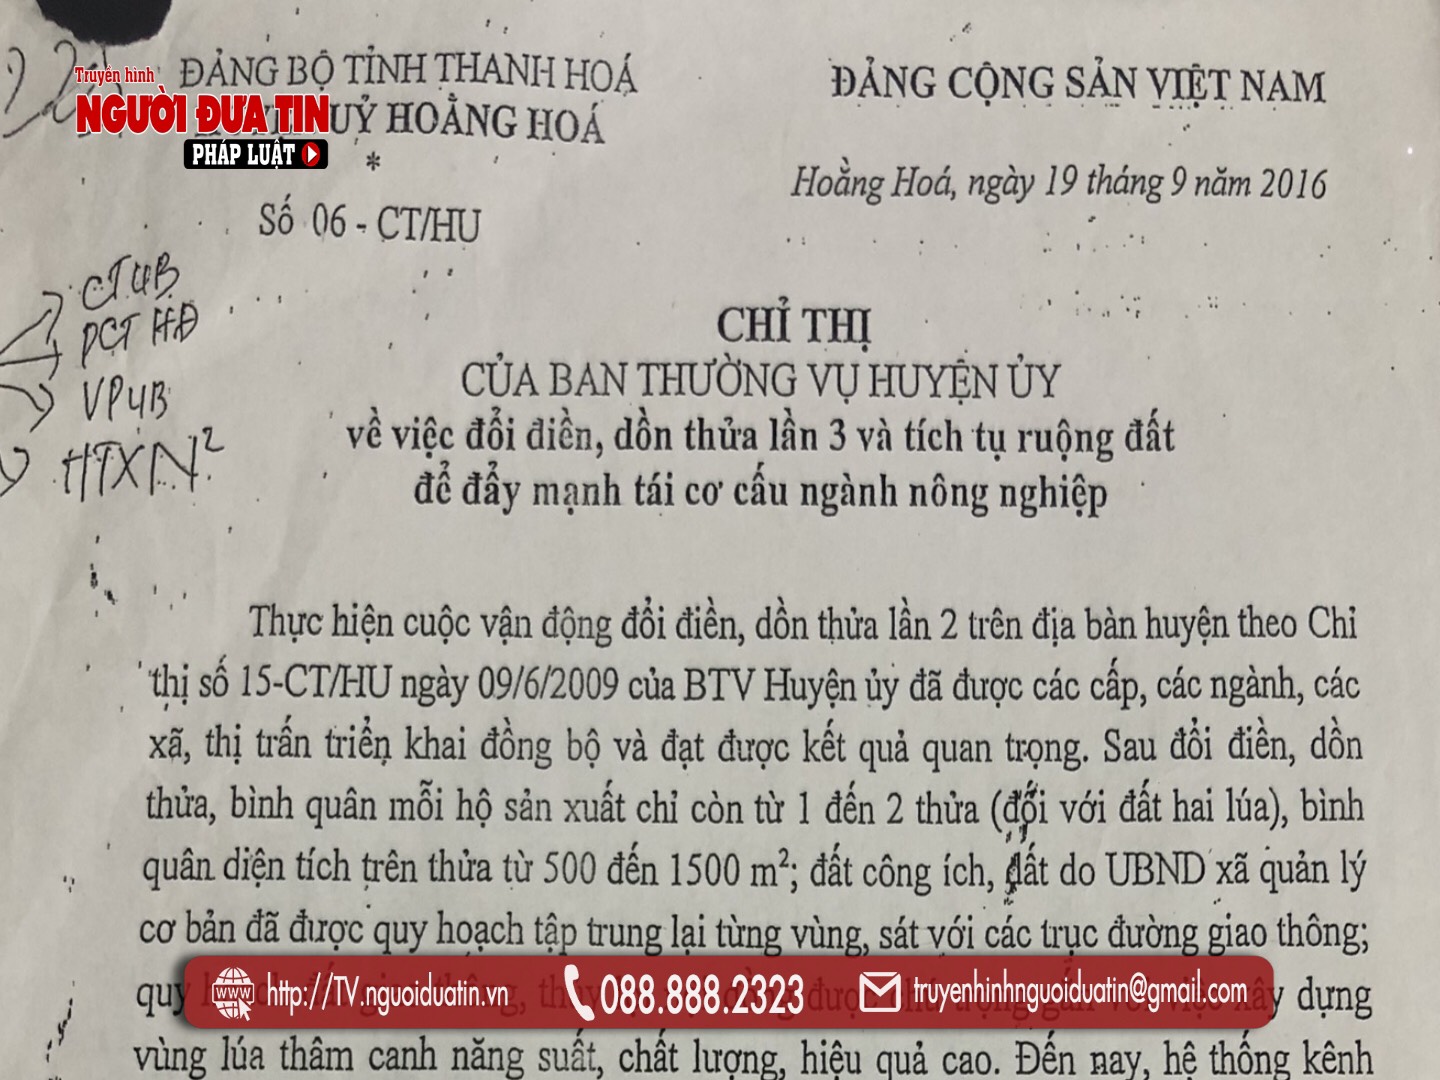 Ngày 19/9/20216 huyện uỷ Thanh Hoá, tỉnh Thanh Hoá ra chỉ thị về dồn điền đổi thửa lần 3